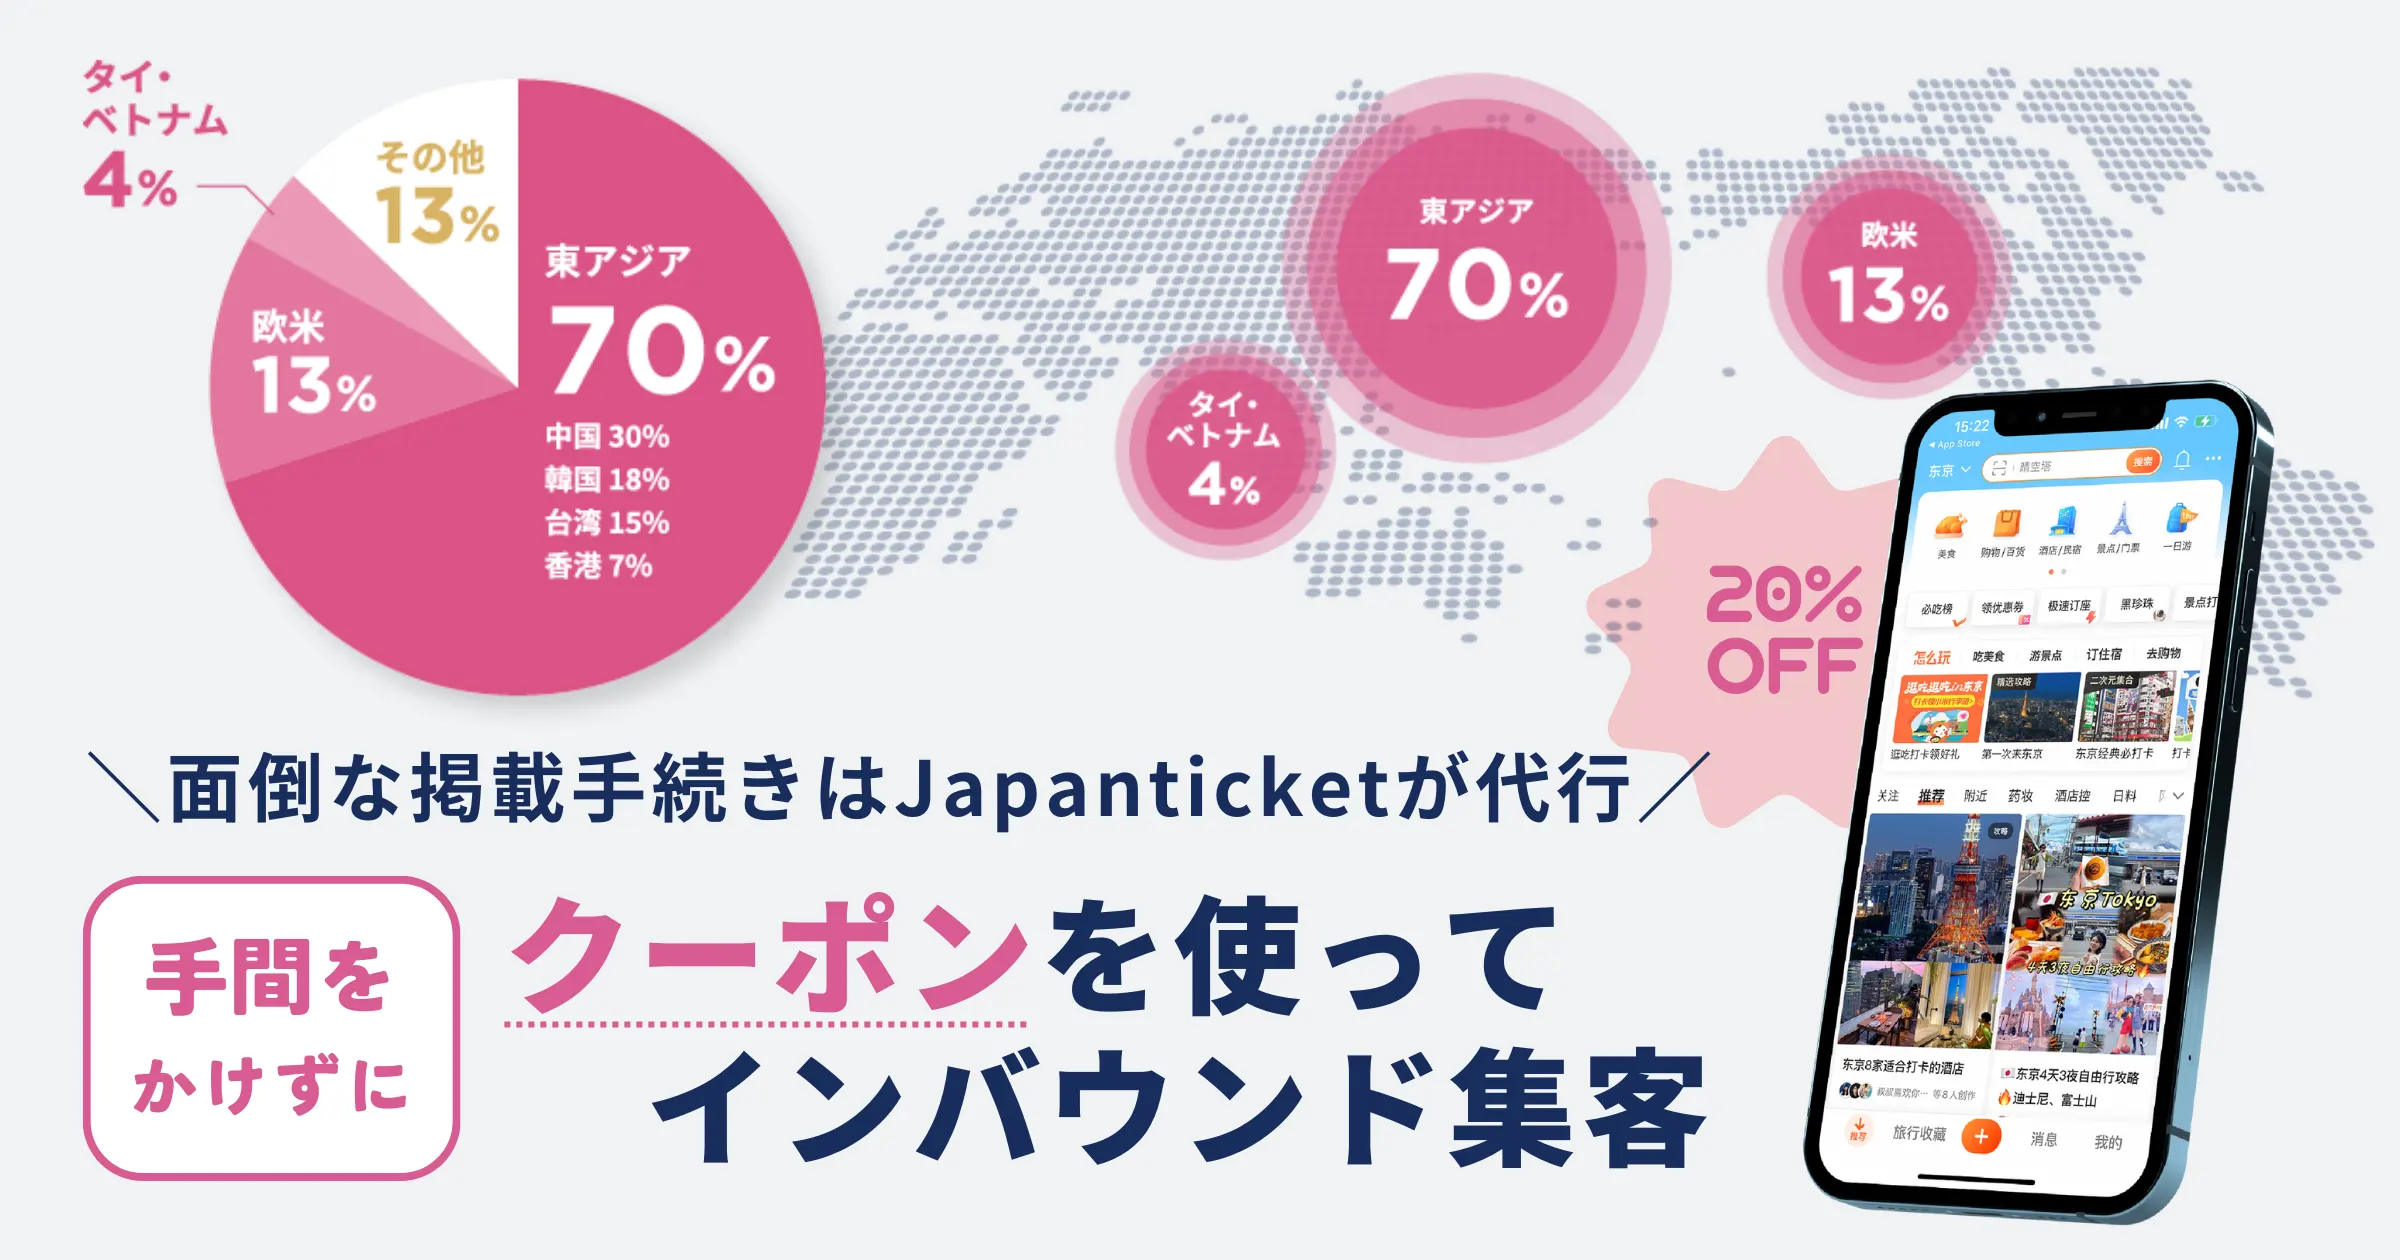 Japanticketクーポンサービスは手間をかけずにクーポンを発行してインバウンド集客が可能